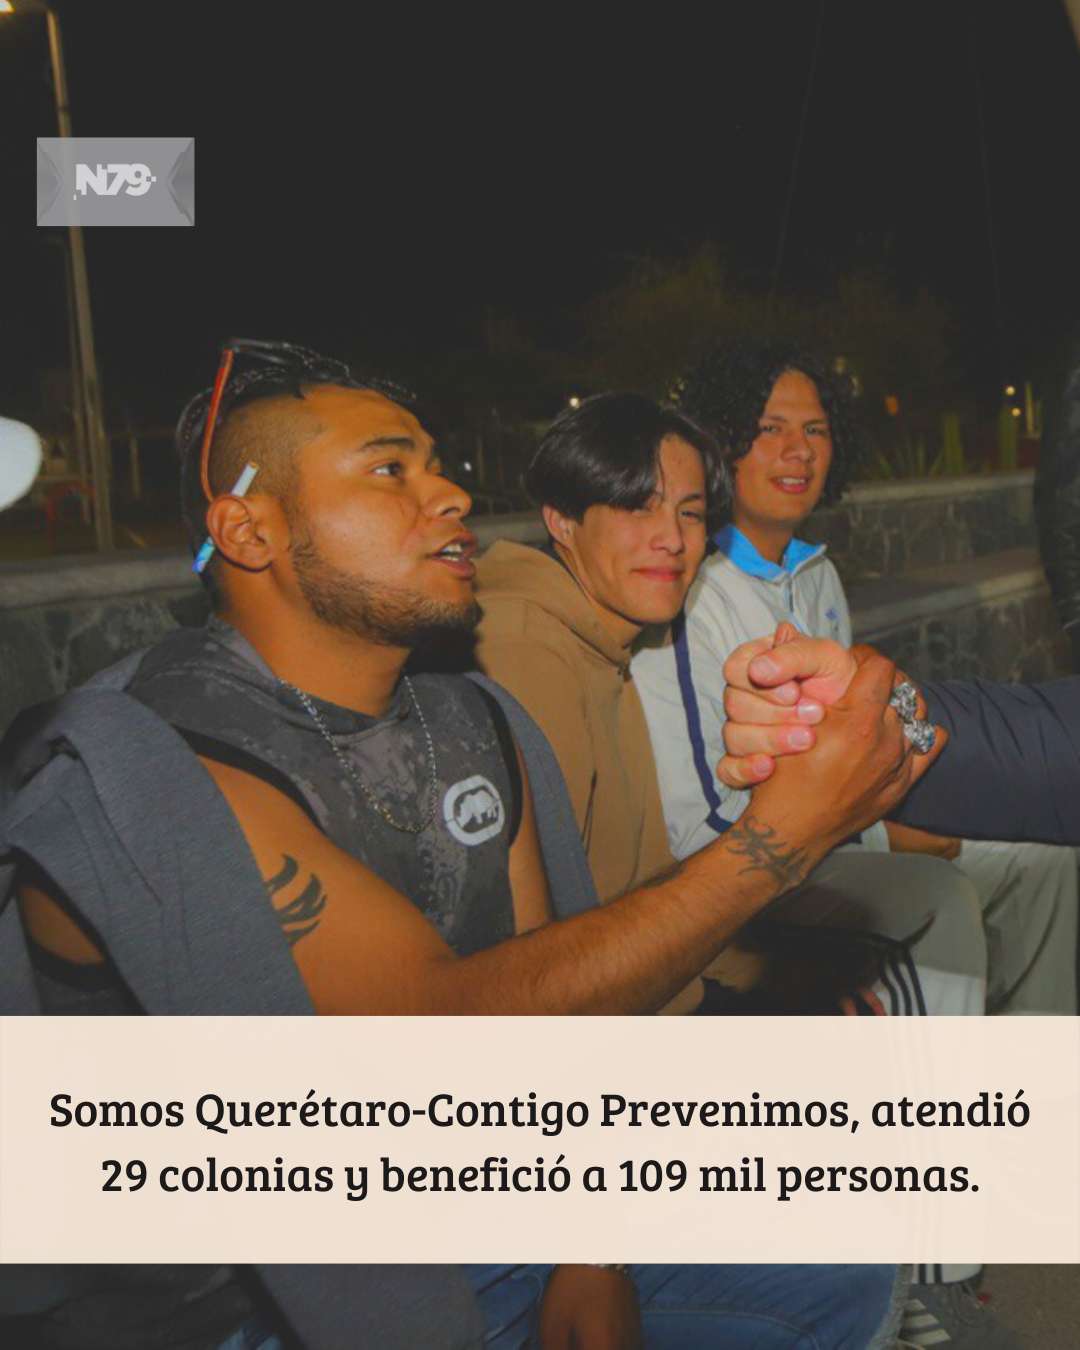 Somos Querétaro-Contigo Prevenimos, atendió 29 colonias y benefició a 109 mil personas.